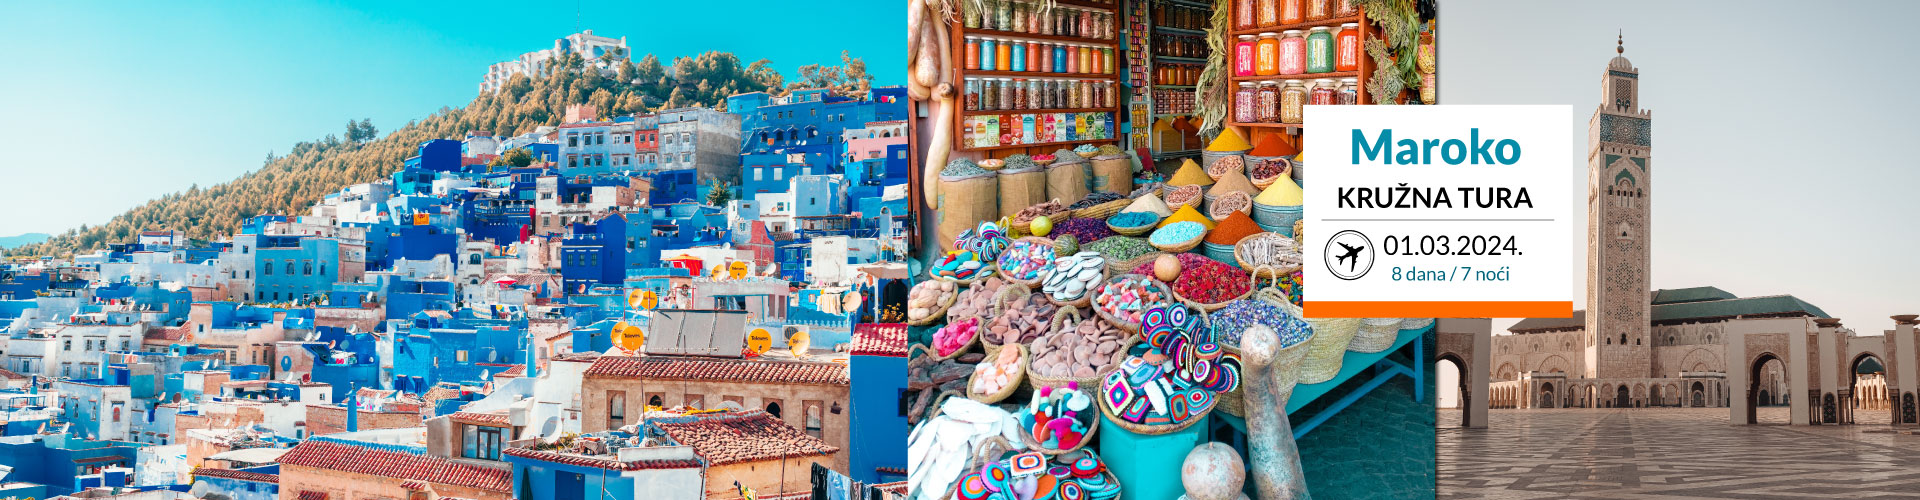 Maroko | Kružna tura 